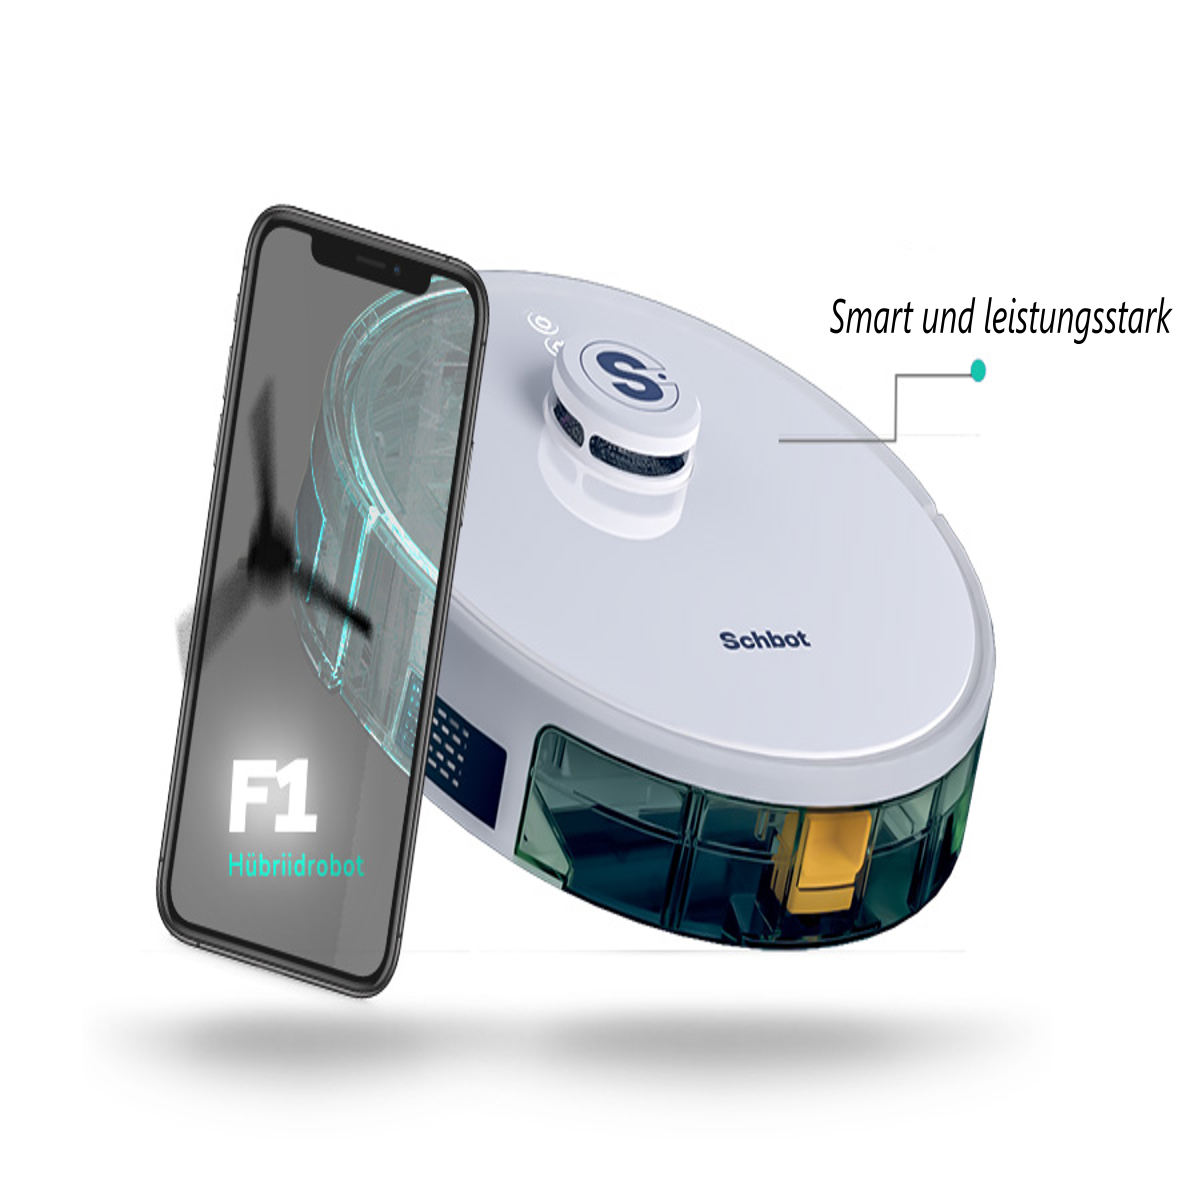 SCHBOT F1-Weiß mit Wischfunktion und Roboterstaubsauger connection Saugroboter App